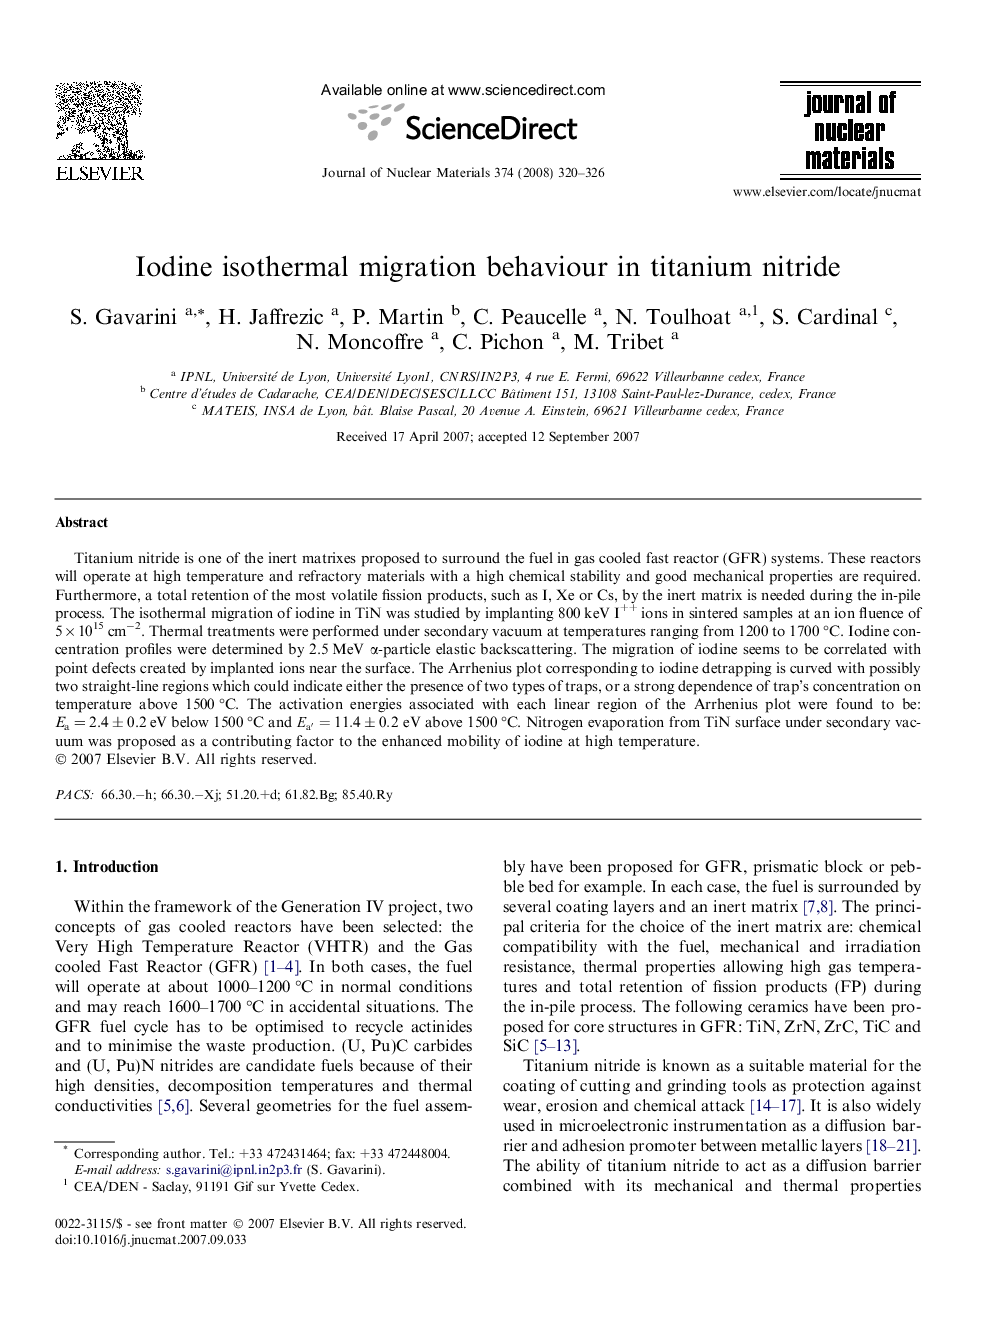 Iodine isothermal migration behaviour in titanium nitride